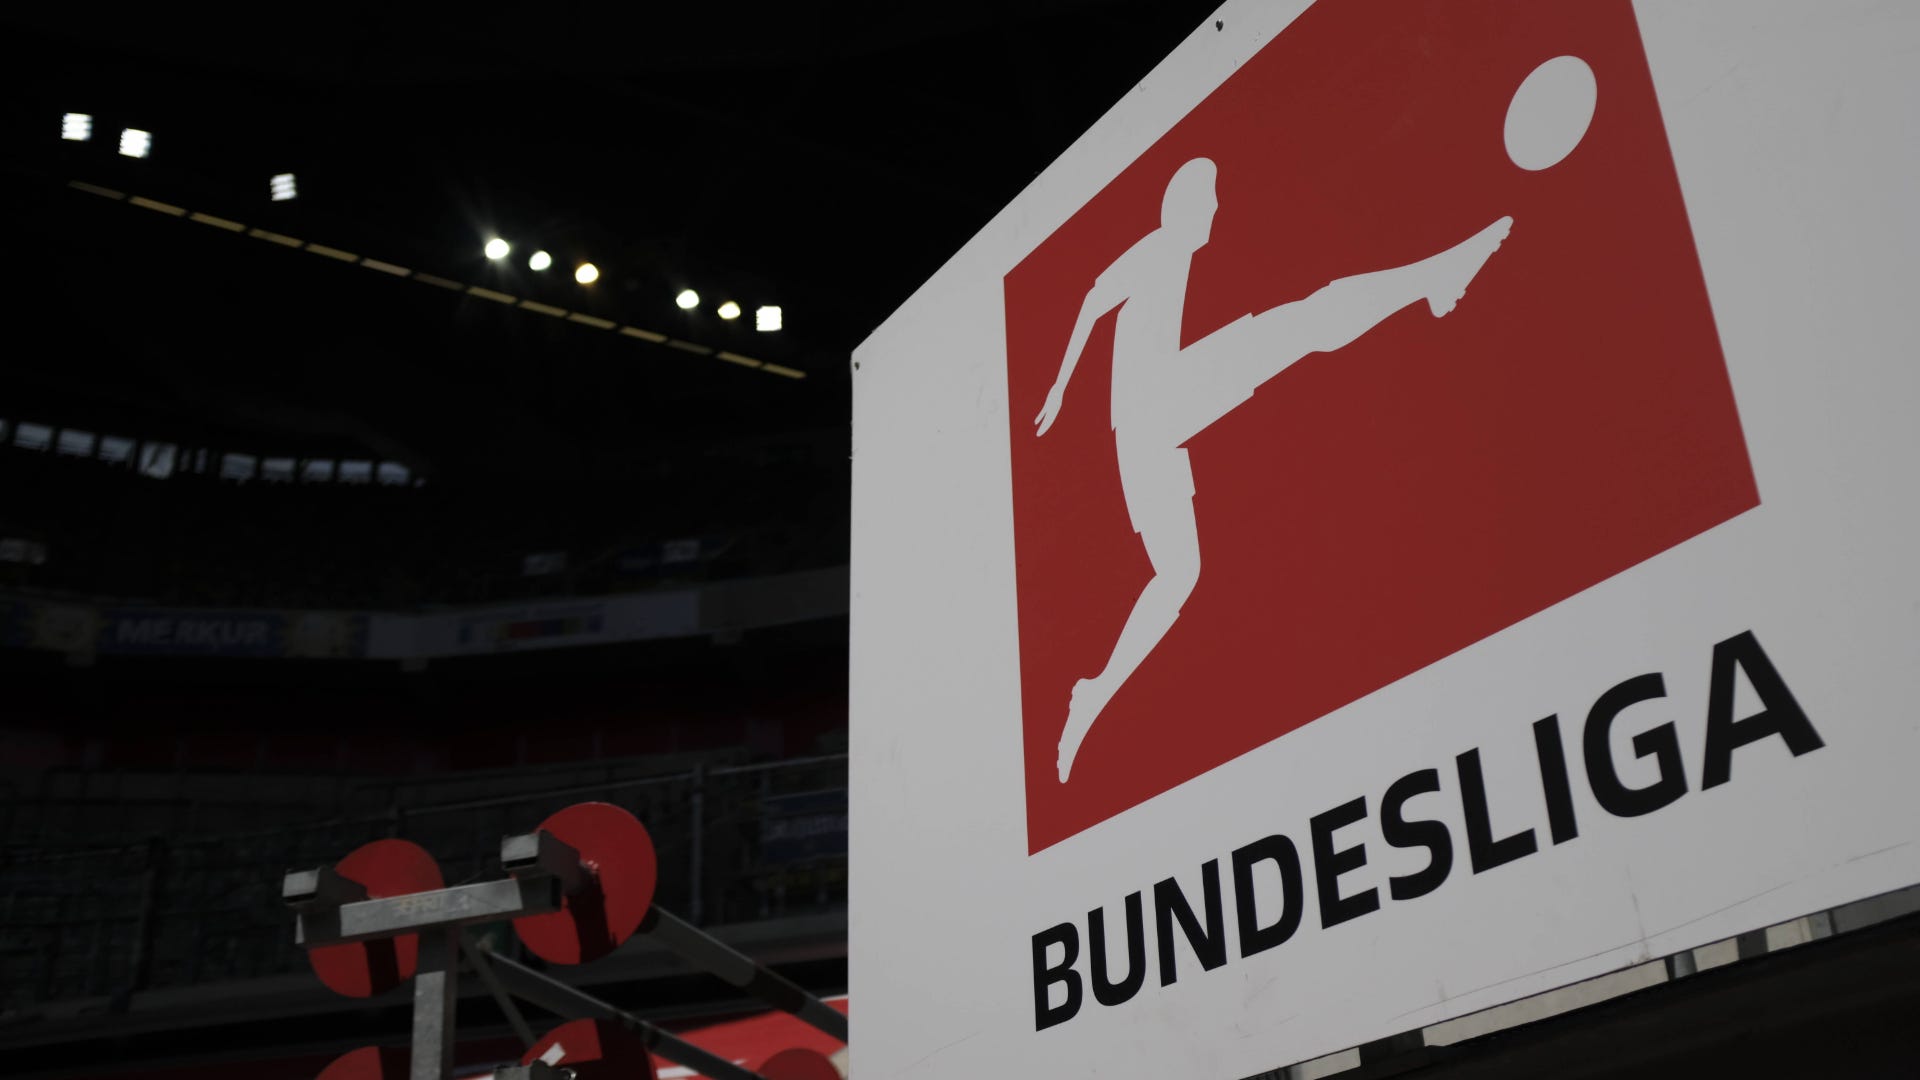 Bundesliga am Samstag live sehen So werden die Spiele heute im TV und LIVE- STREAM gezeigt / übertragen Goal Deutschland